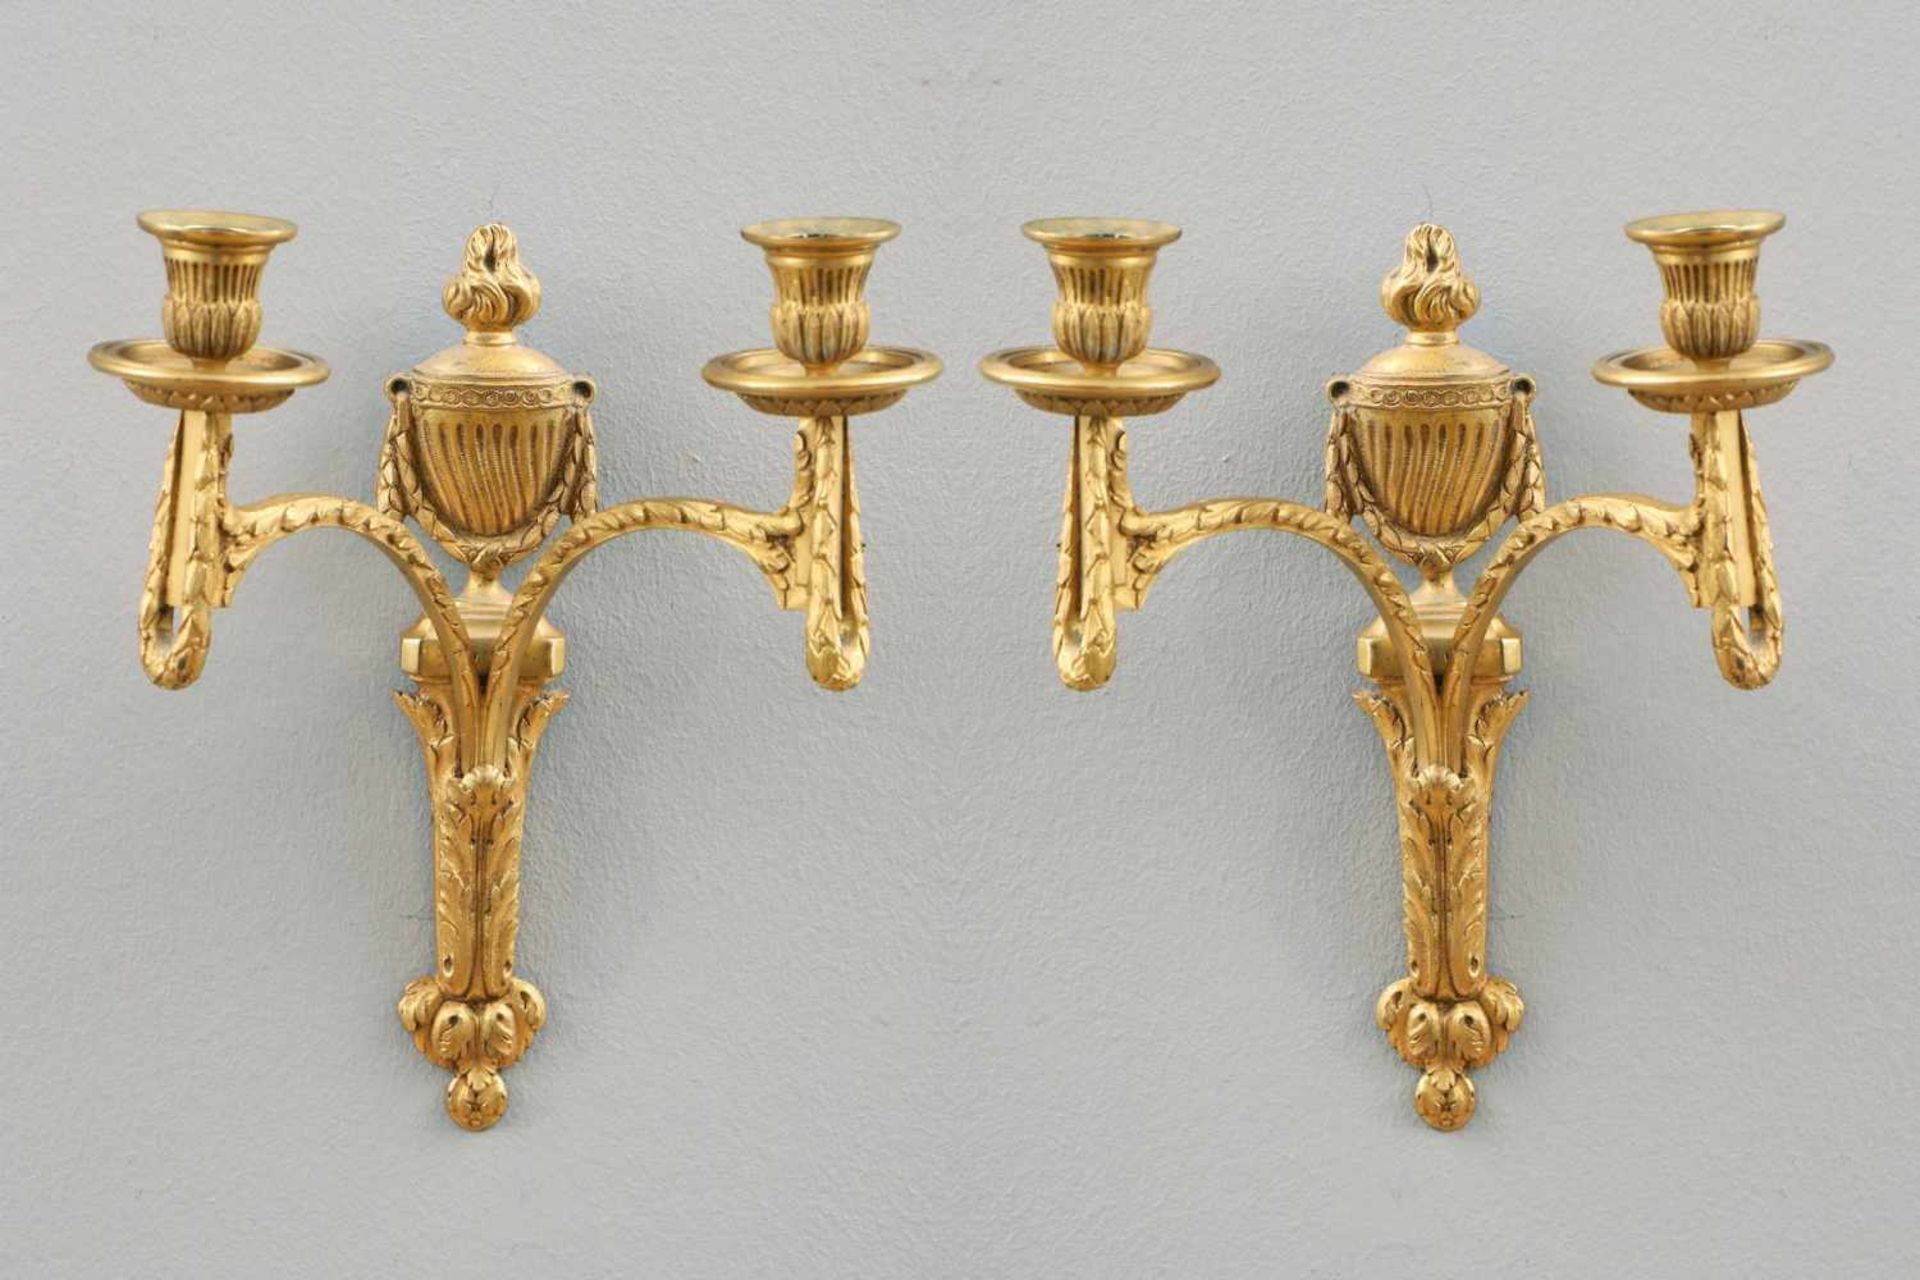 Paar Wandappliken im Stile des EmpireBronze, feuervergoldet, Frankreich, 19. Jhdt., mit Vasen- und